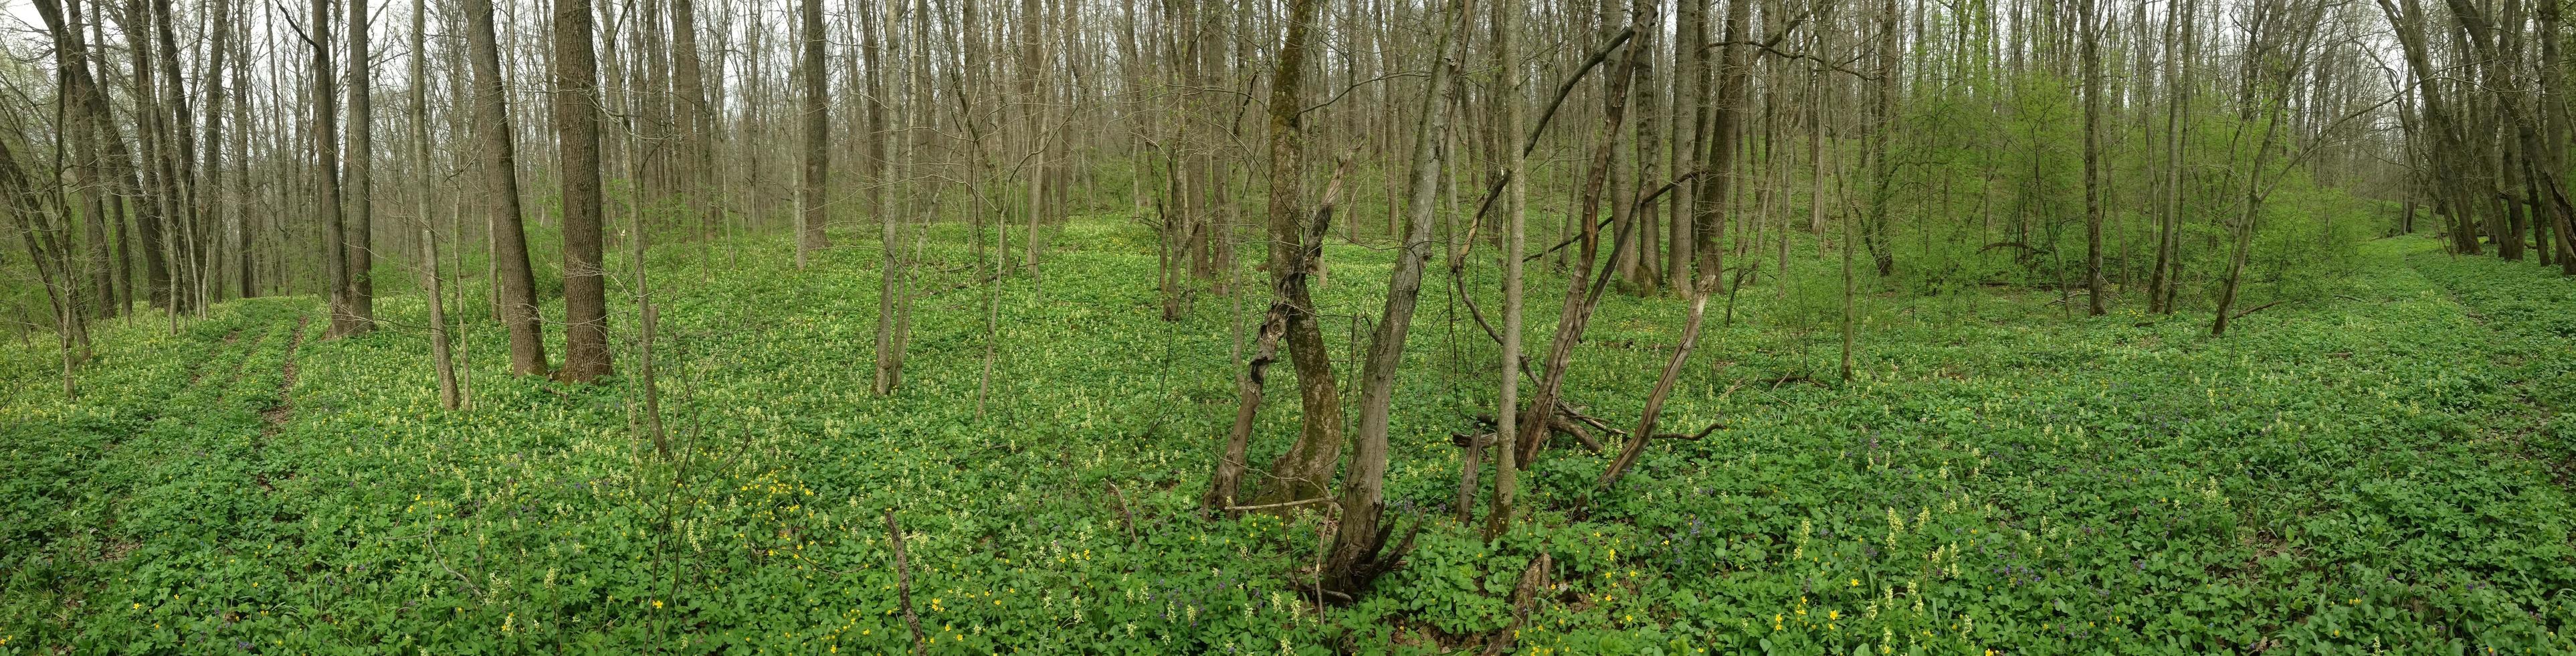 magia primavera bosque en Ucrania foto